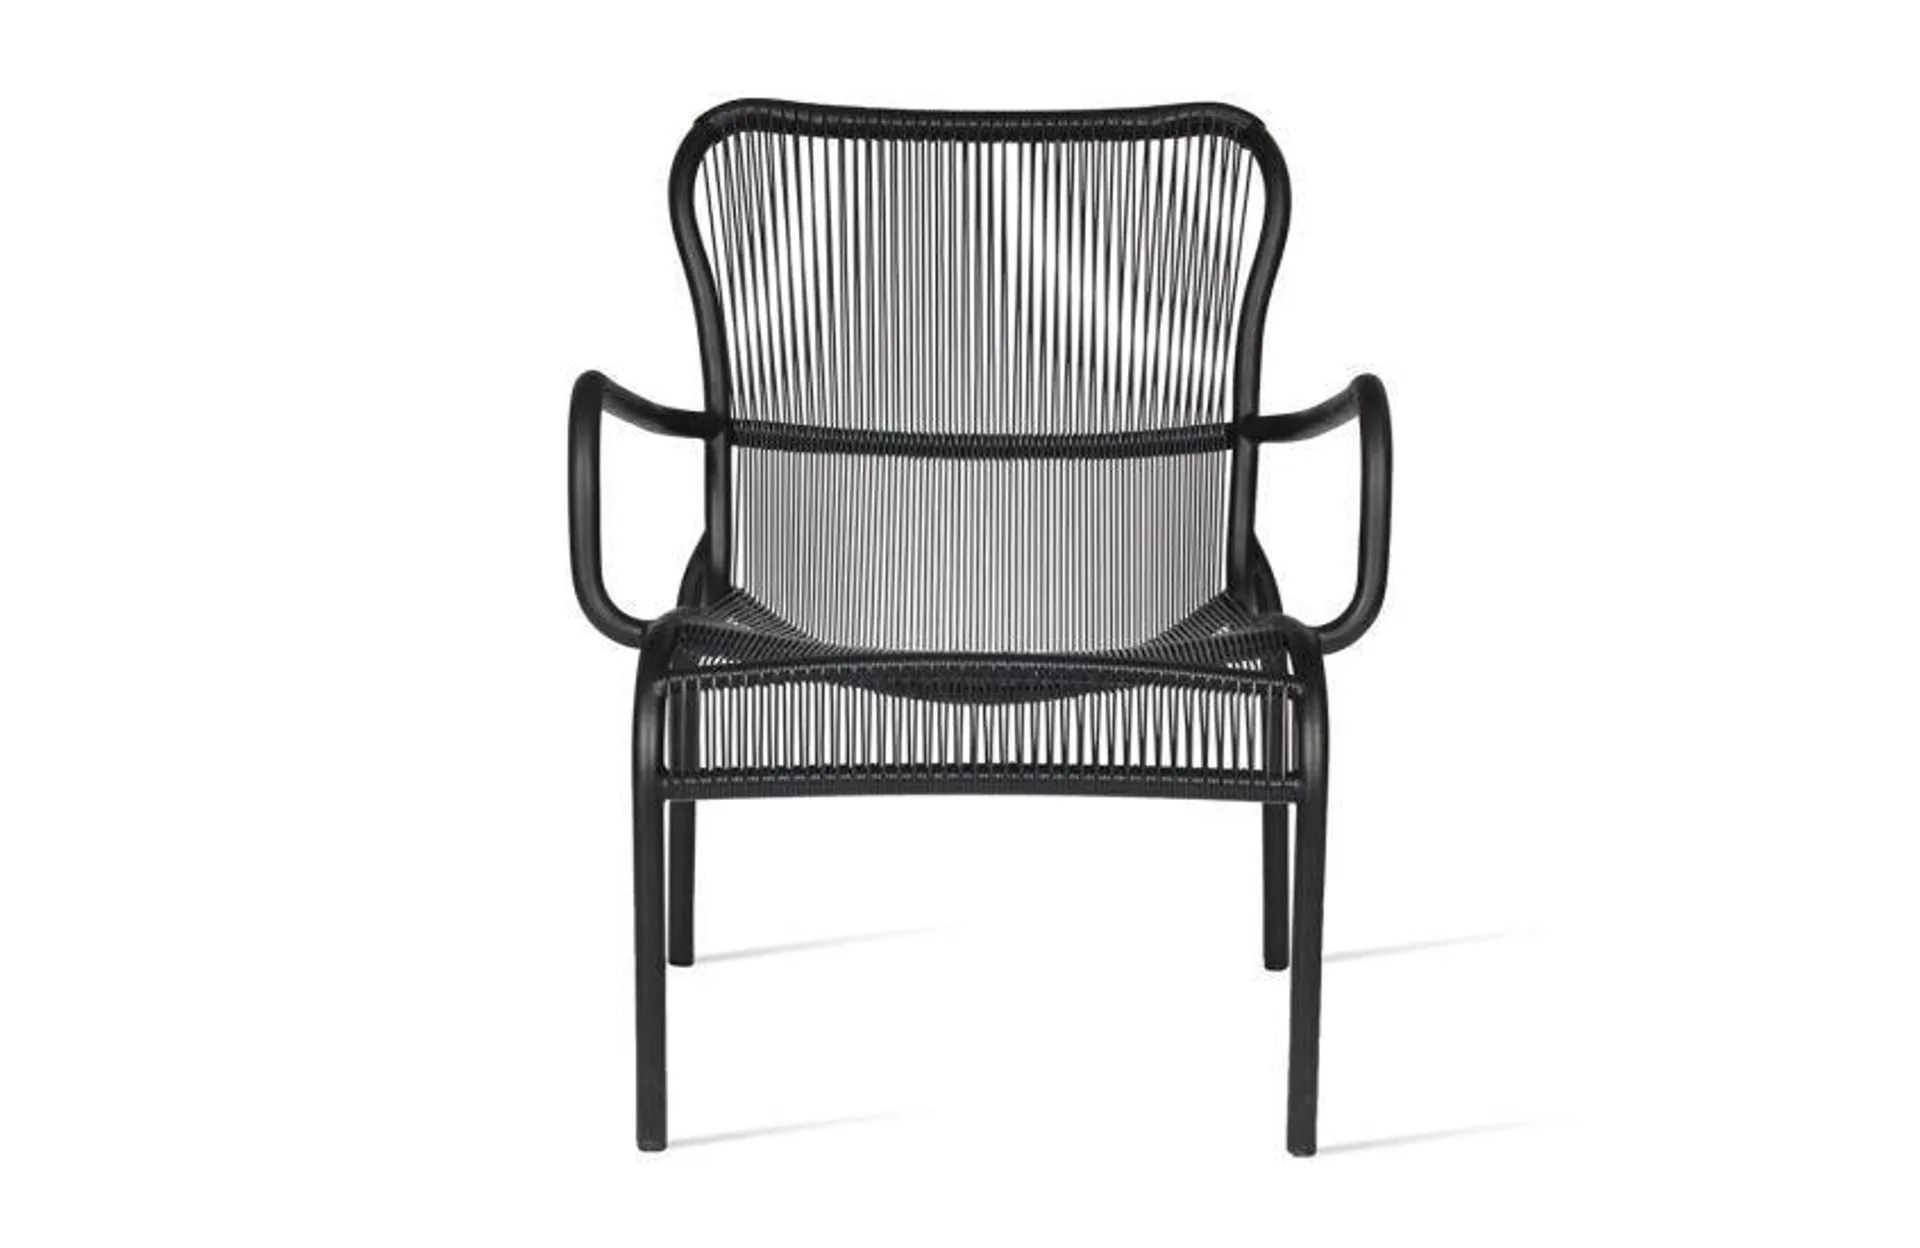 Loop Outdoor Lounge Chair Black